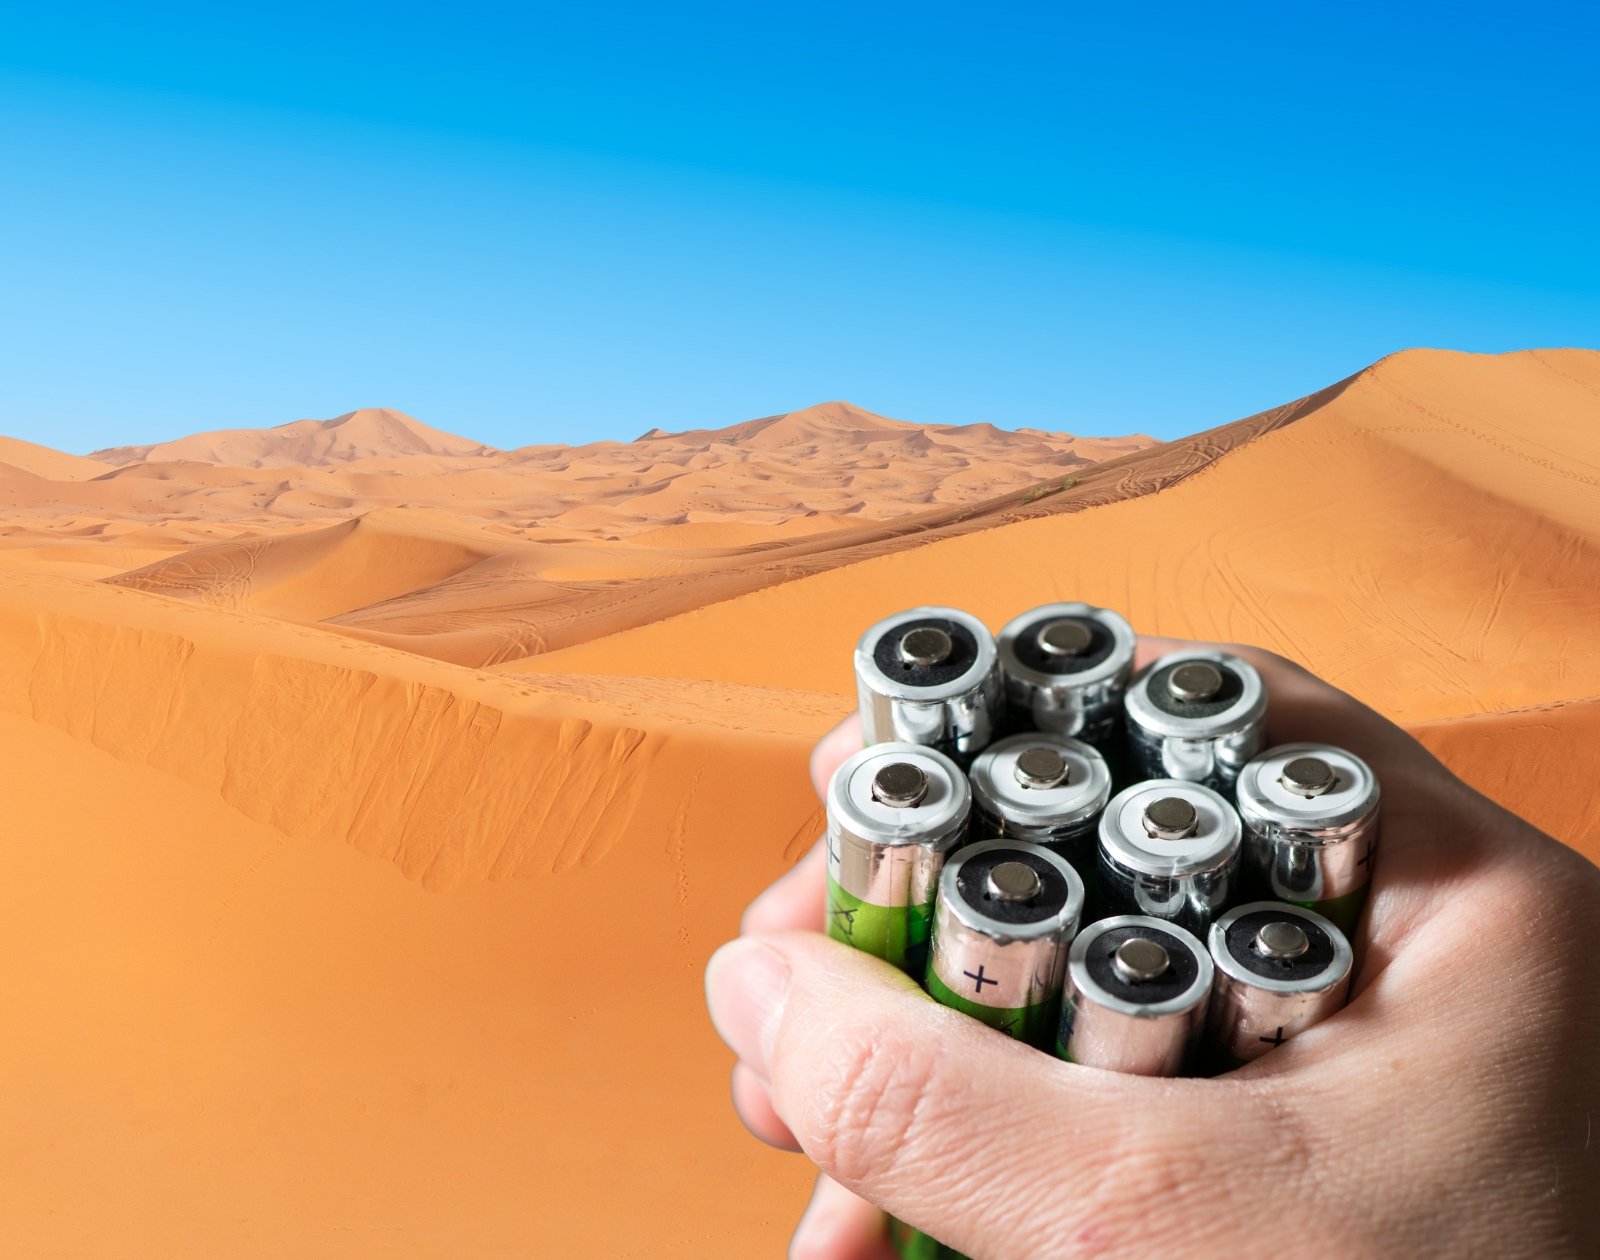 Le sable chaud, une nouvelle forme de batterie pas chère et écologique ?